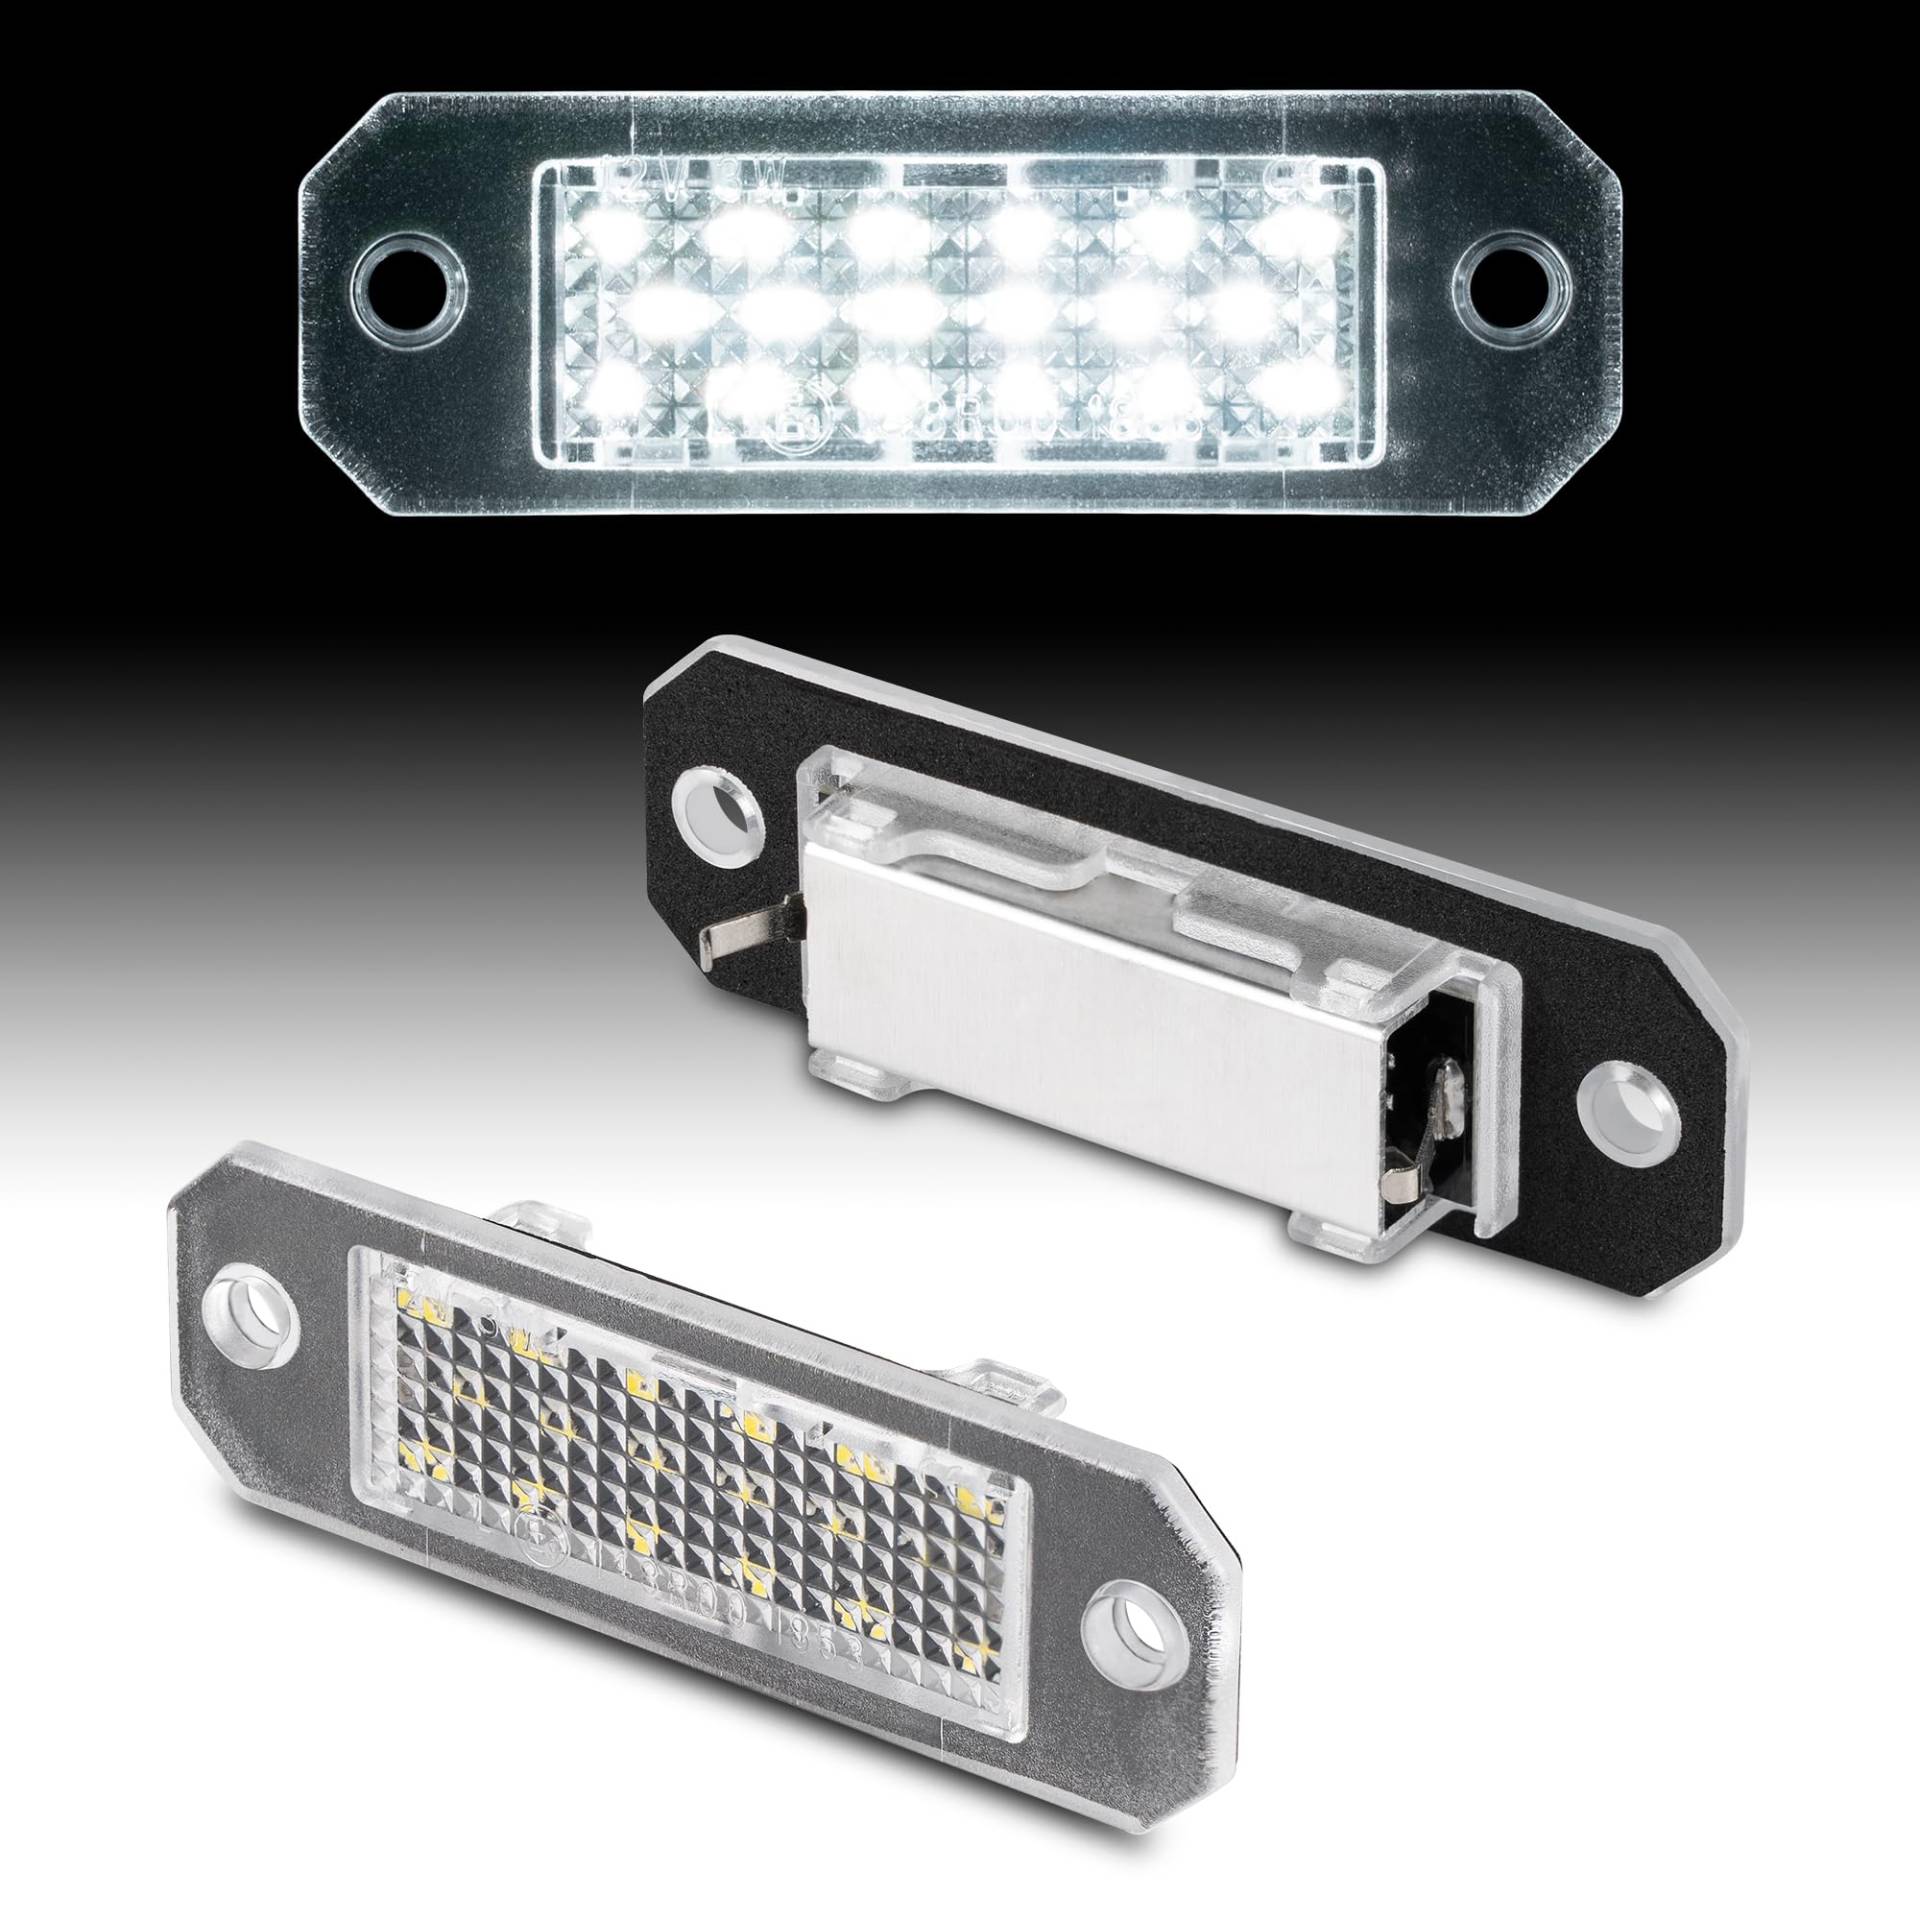 LLCTOOLS - Nummernschildbeleuchtung Langlebig & Effizient - Kennzeichenleuchte LED kompatibel mit VW - Hochwertige LED Kennzeichenbeleuchtung - 2x Auto Kennzeichenleuchten mit geringem Stromverbrauch von LLCTOOLS